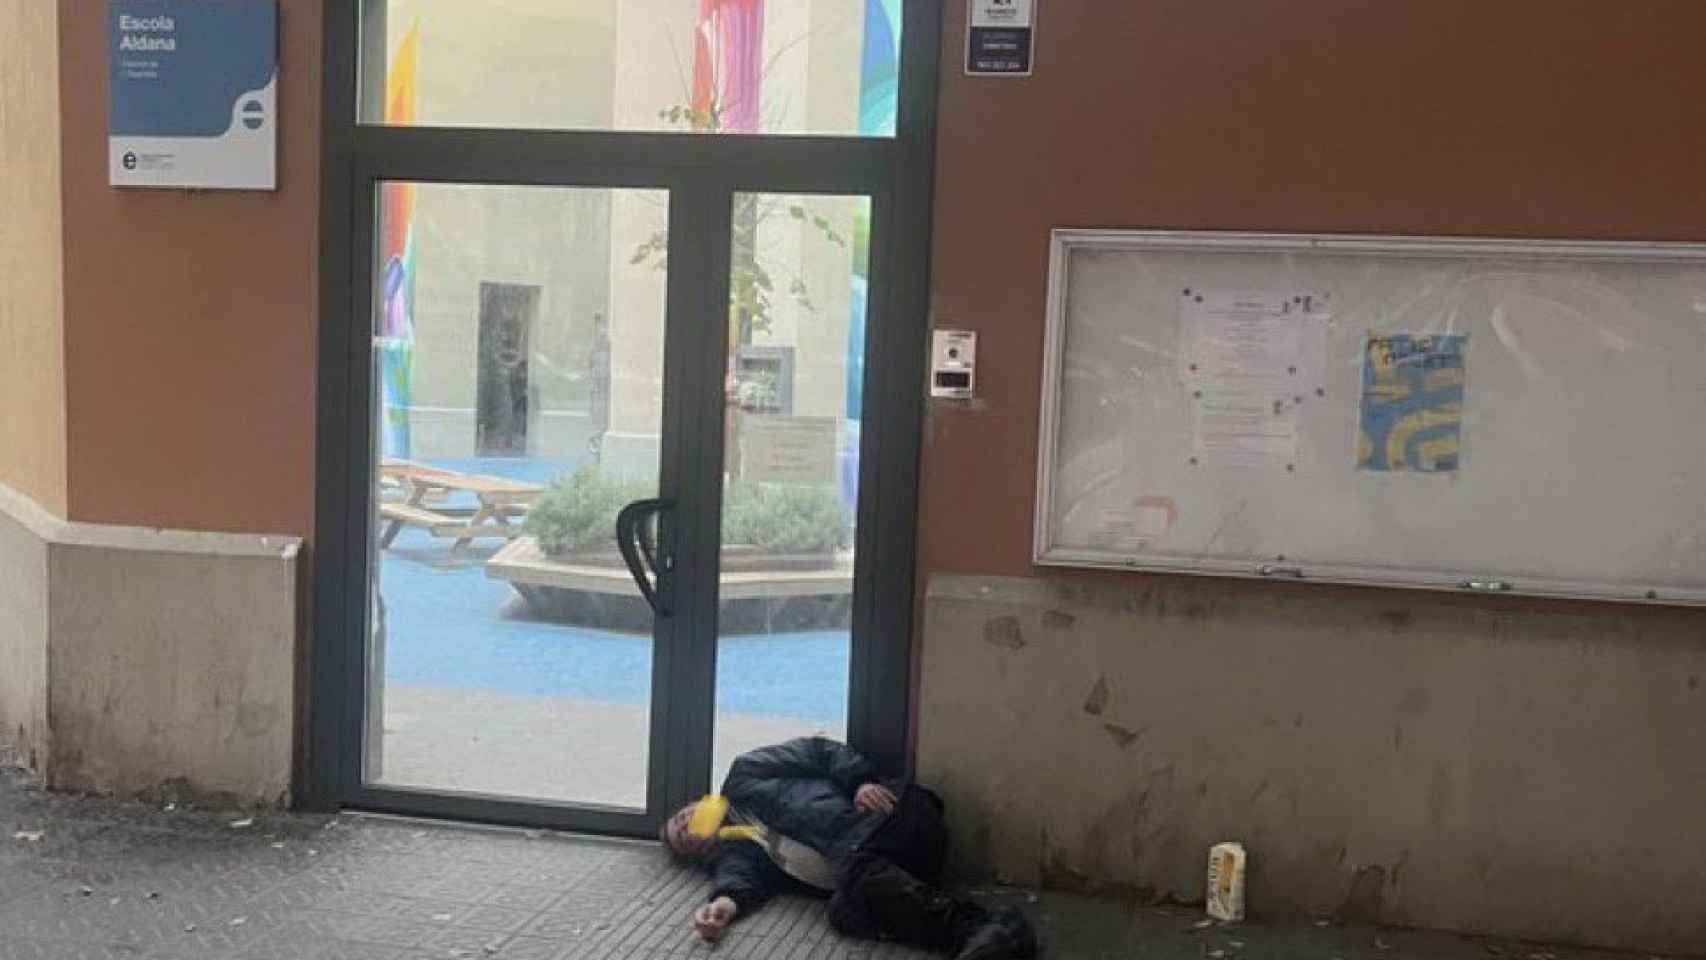 Una persona sintecho durmiendo en las puertas de la Escola Aldana de Sant Antoni